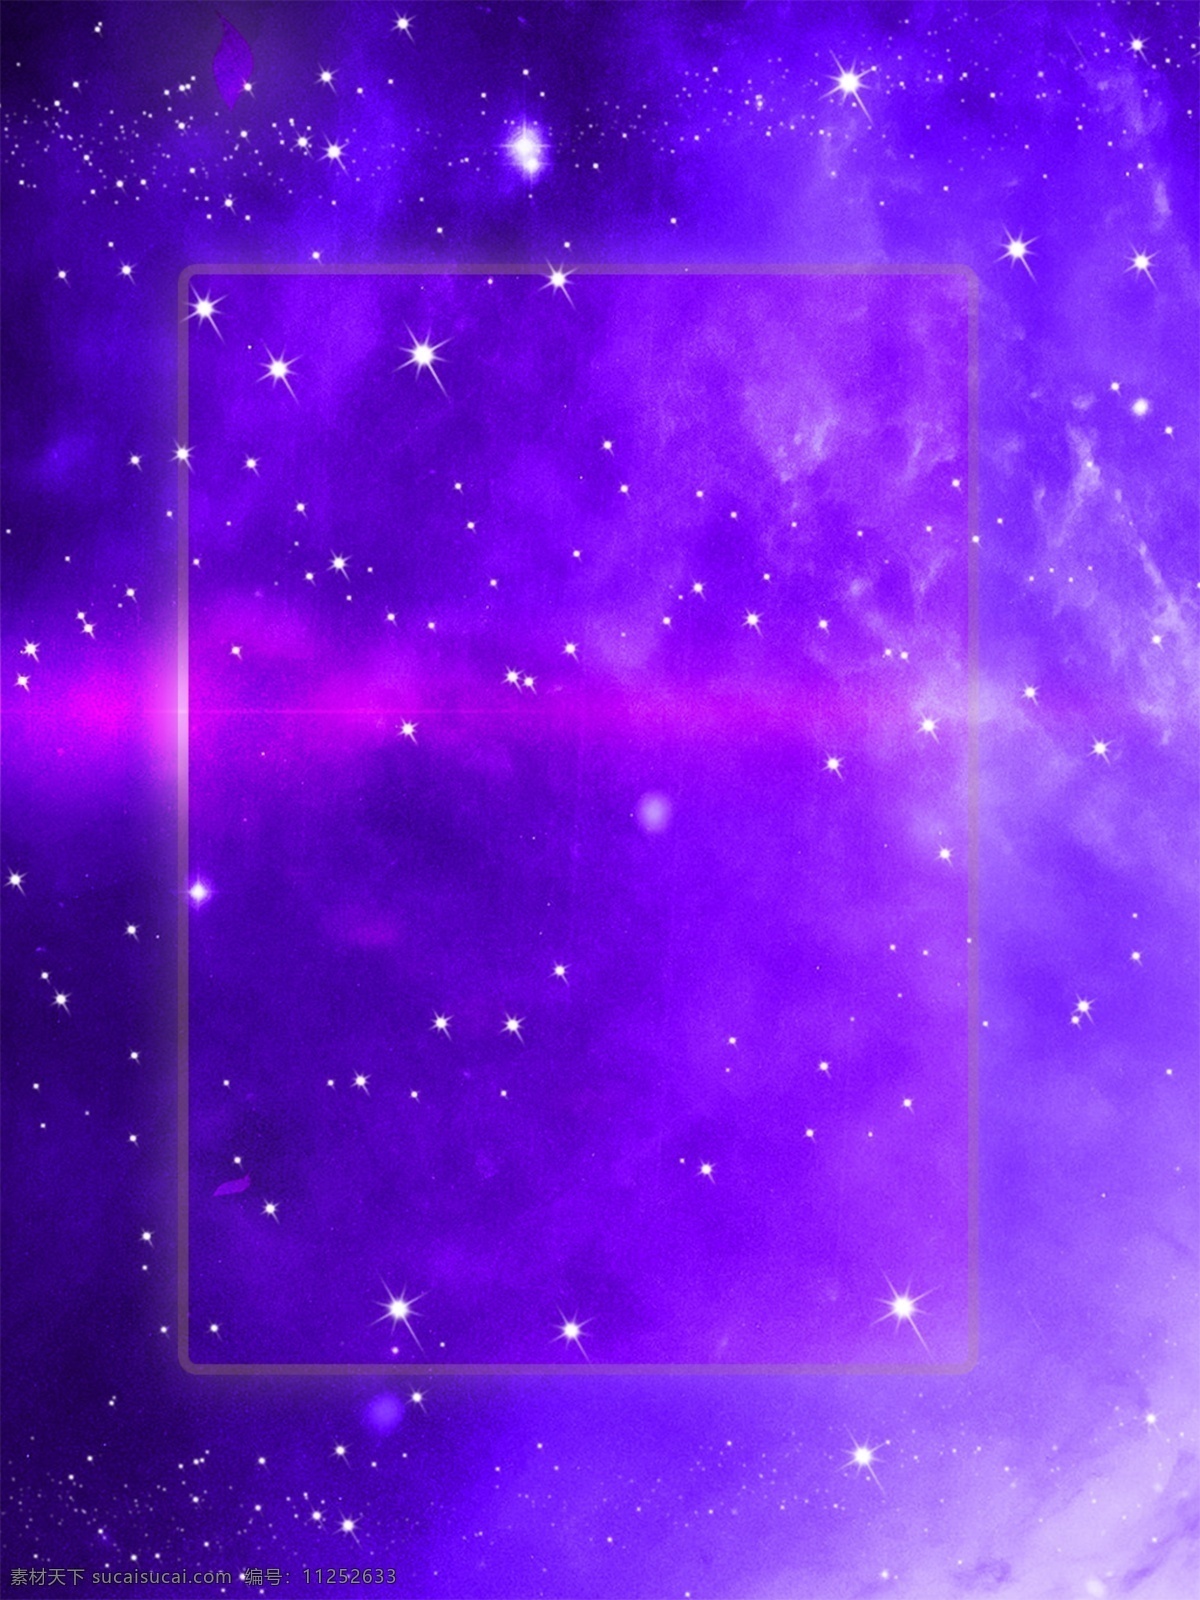 渐变 紫色 星空 唯美 星光 梦幻 银河 商务 原创 背景 质感 紫色背景 小清新 原创背景 简约风格 星河